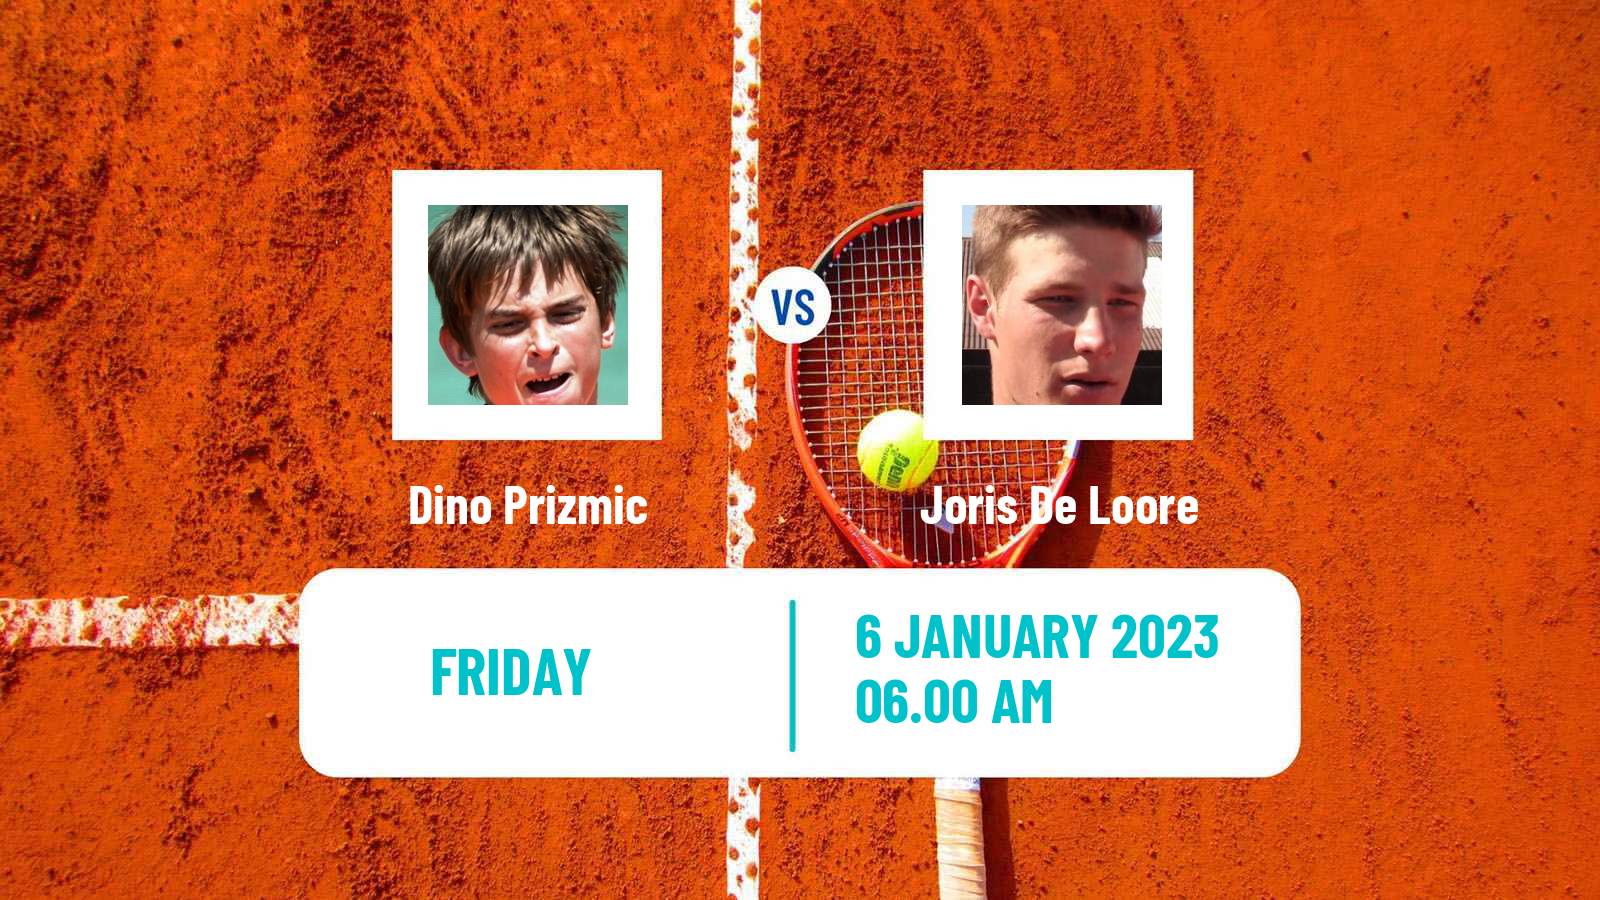 Tennis ATP Challenger Dino Prizmic - Joris De Loore